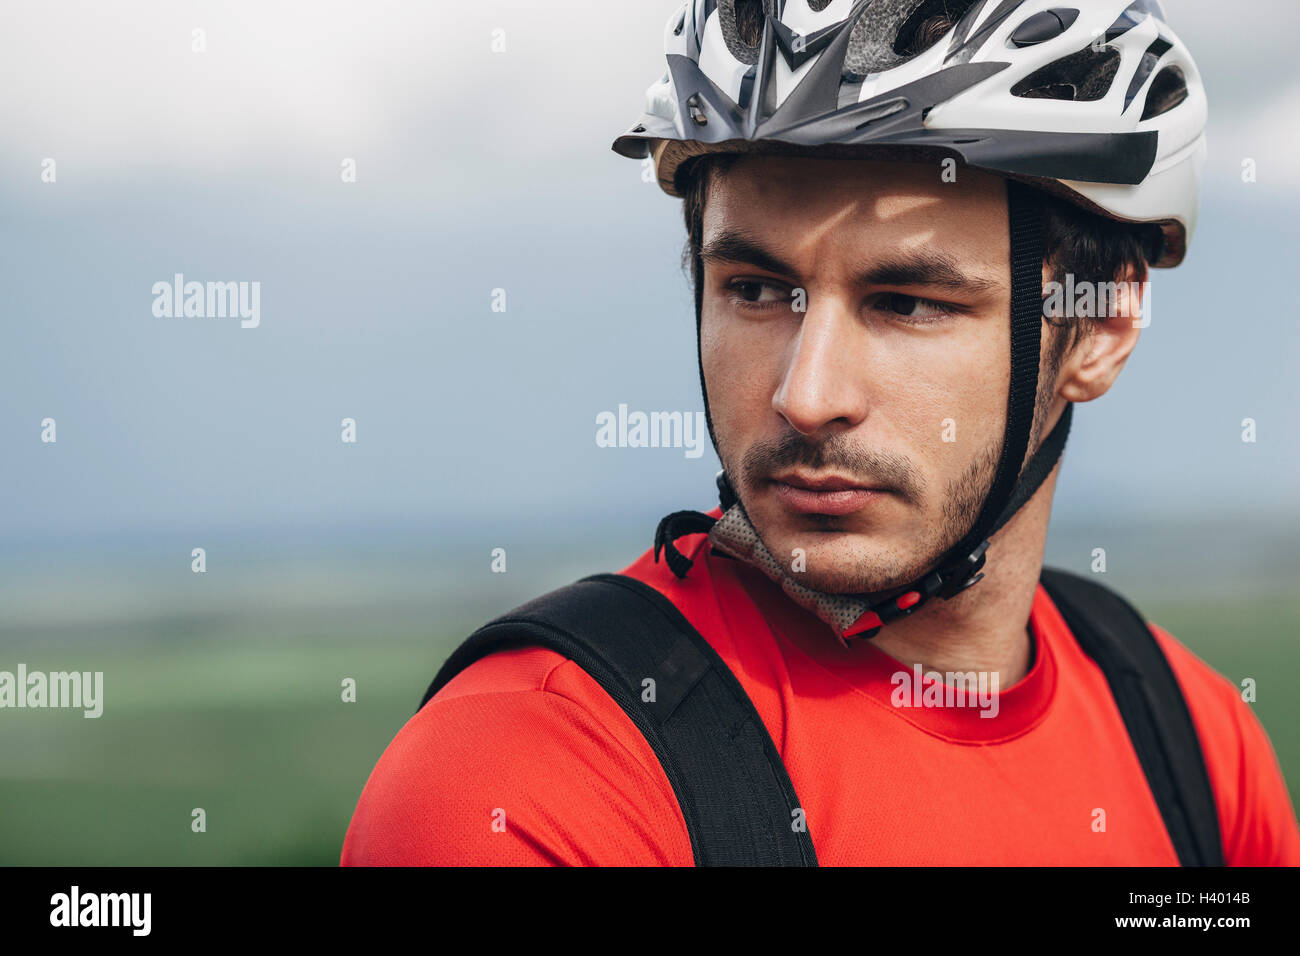 Ritratto di fiducioso uomo che indossa il casco per bicicletta Foto Stock